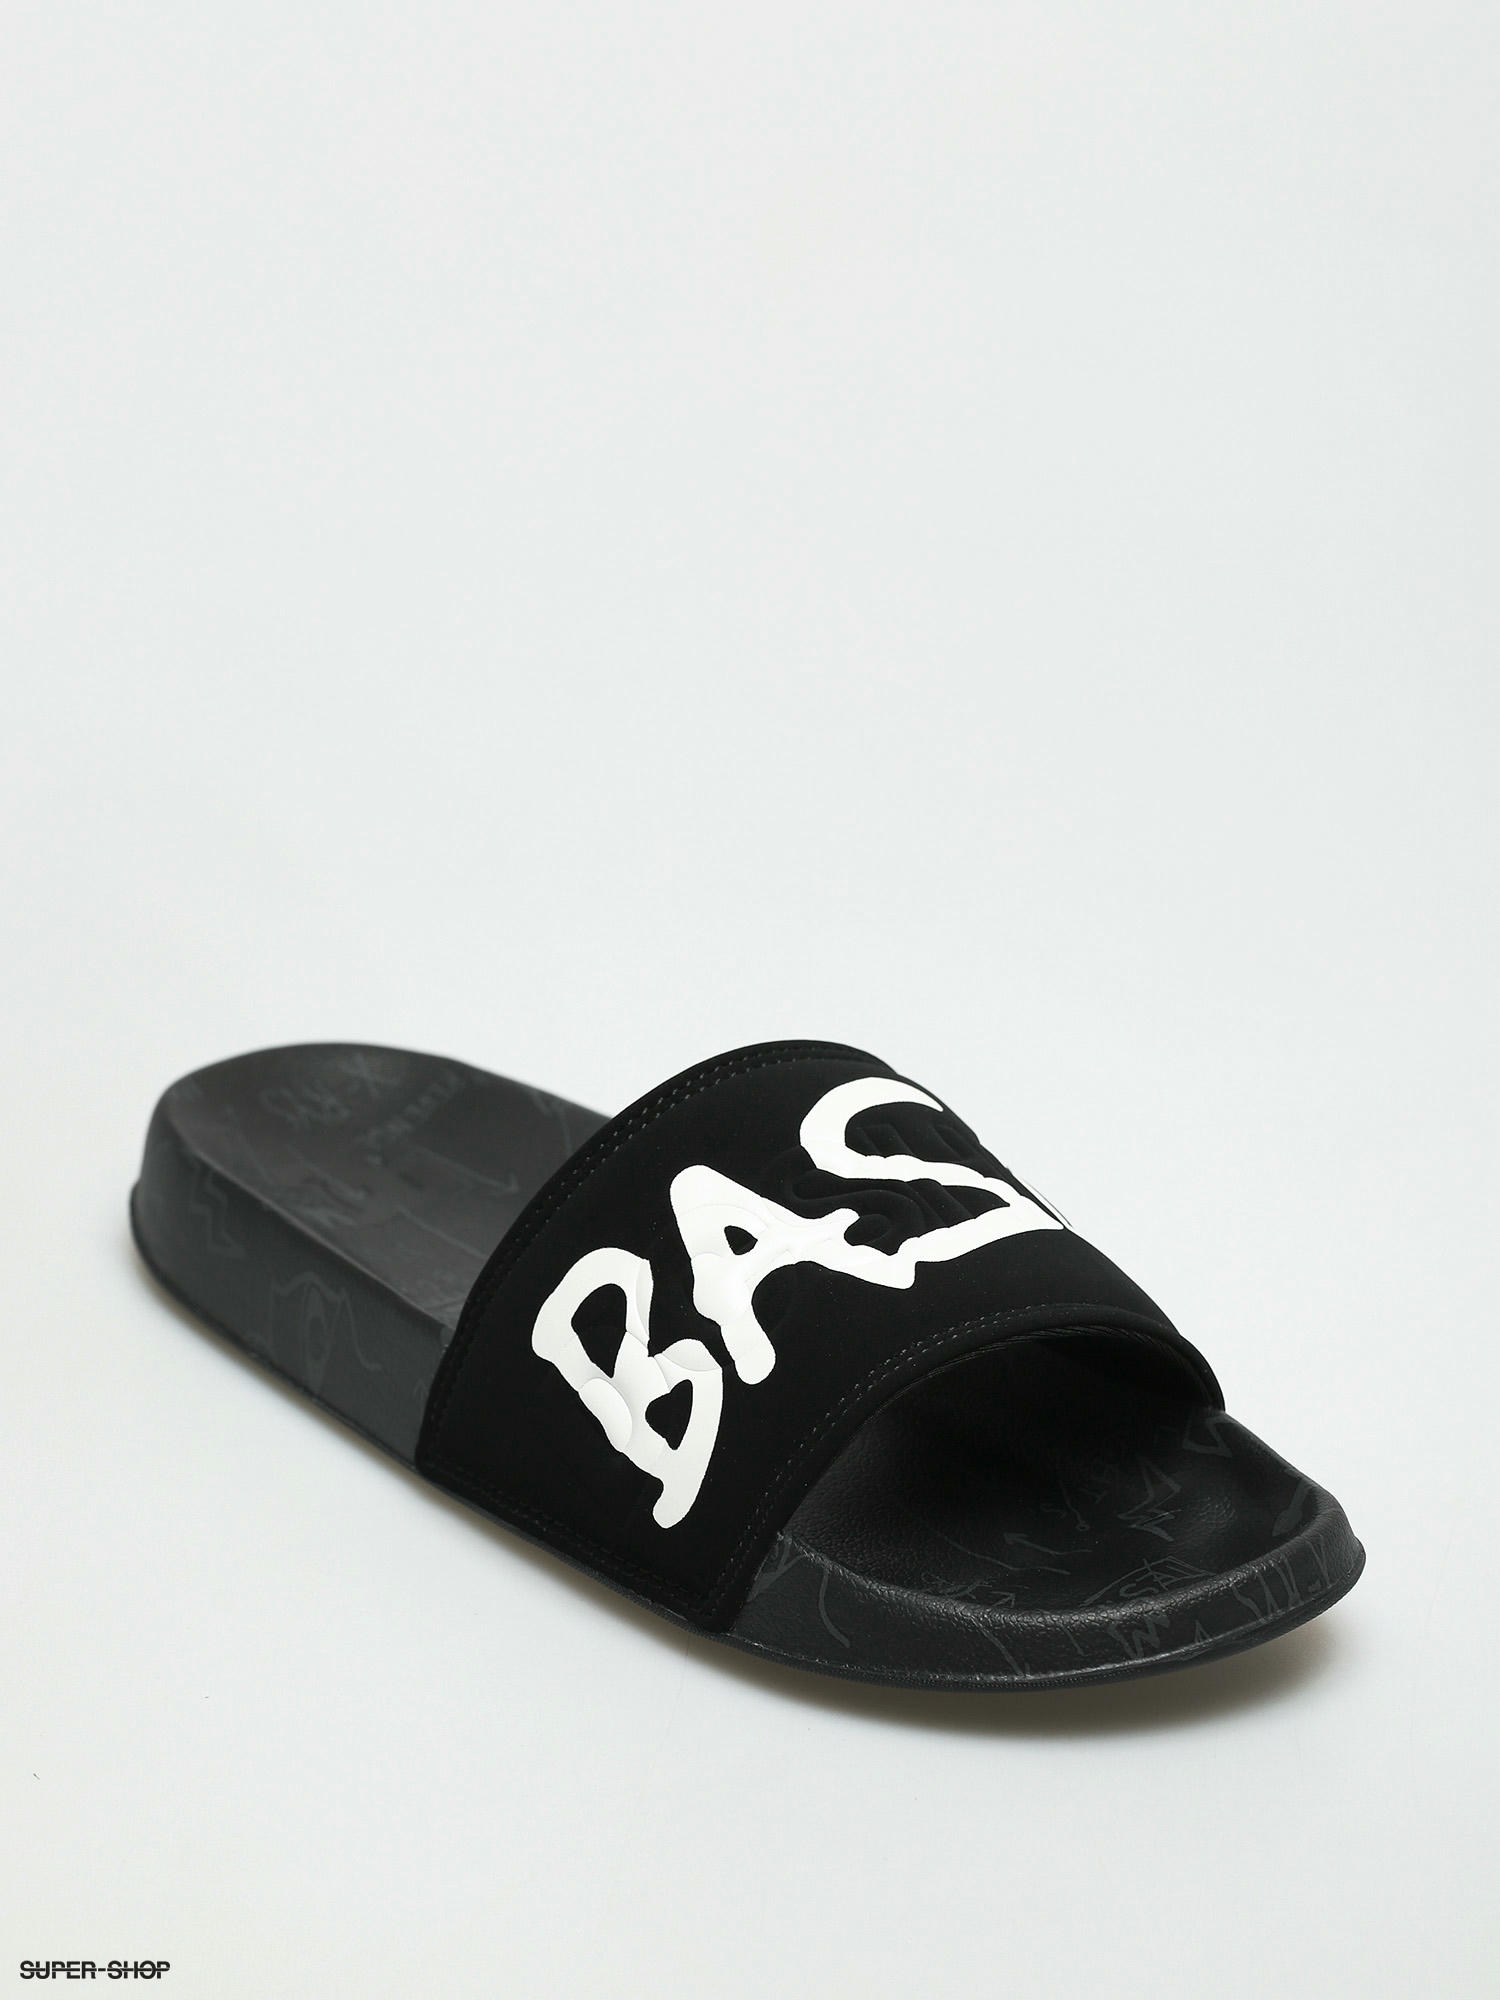 Hoved svært koncert DC X Basquiat Basq Flip-flops (black/dk grey print)